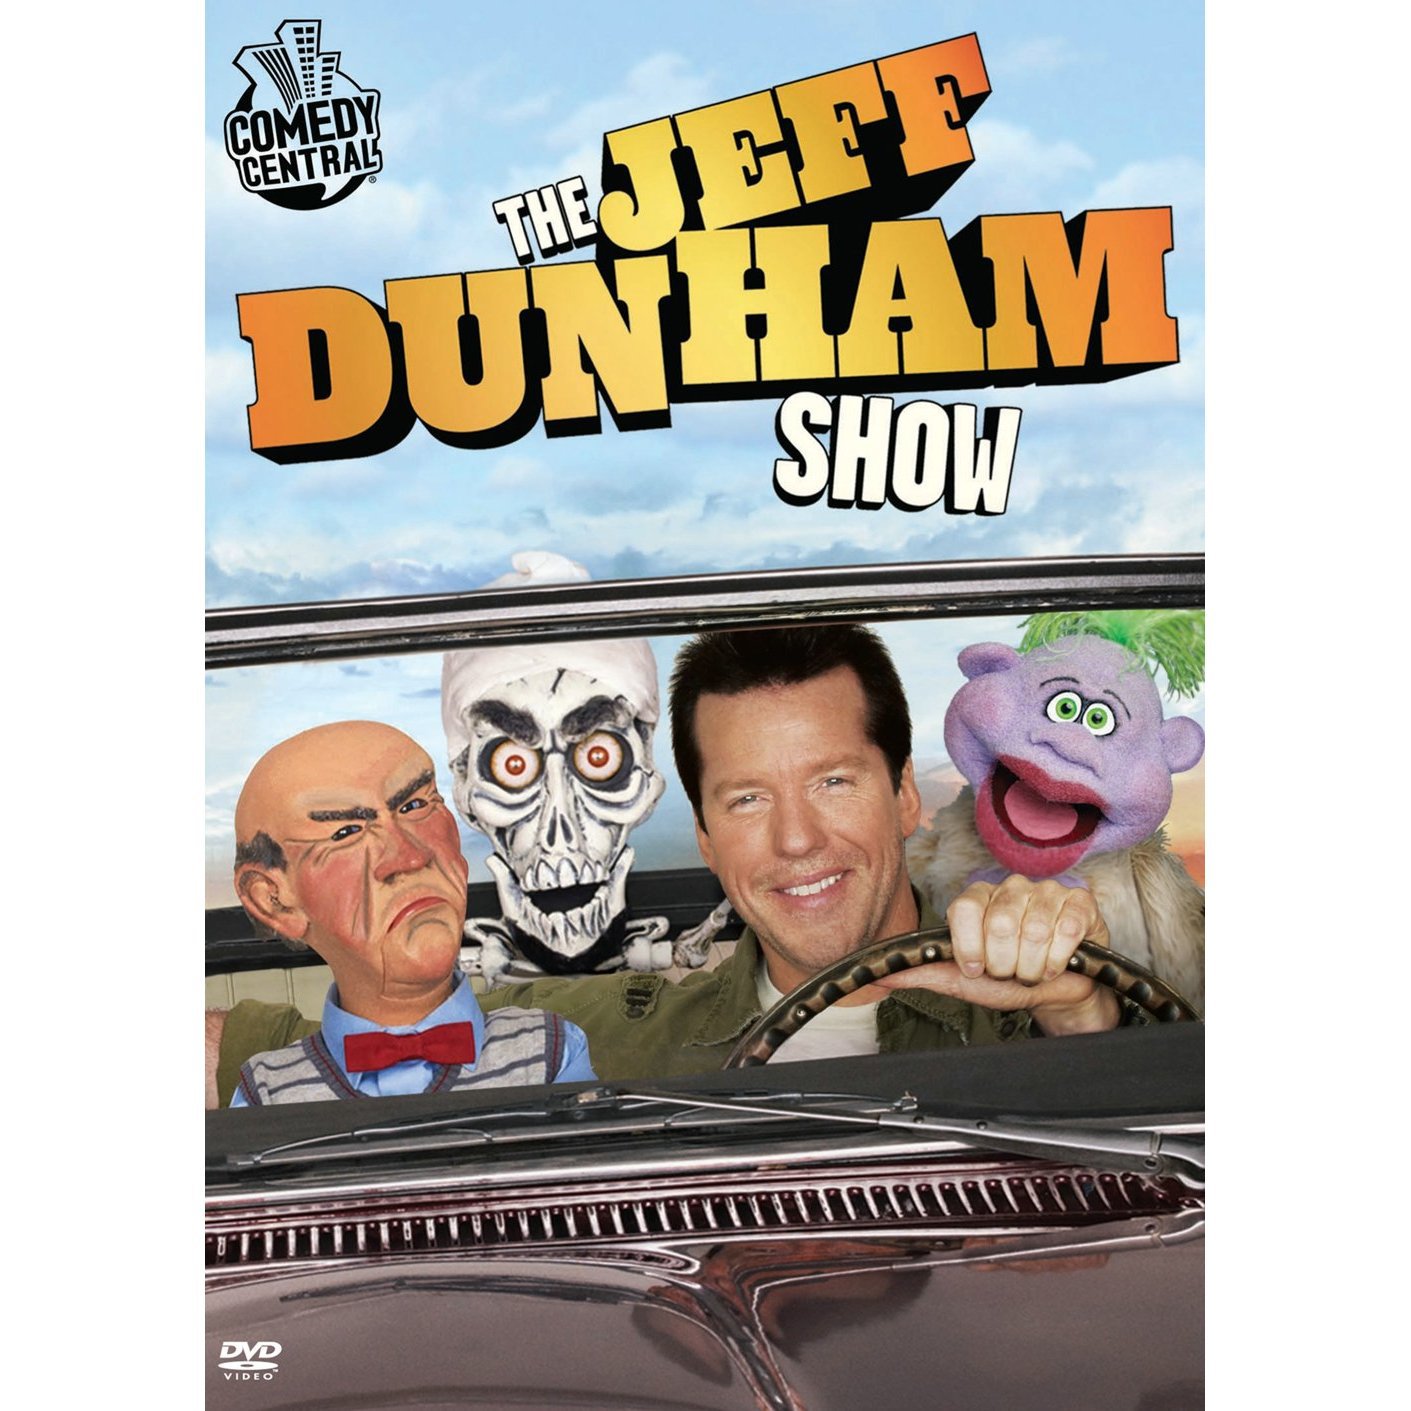 Jeff Dunham Show, The